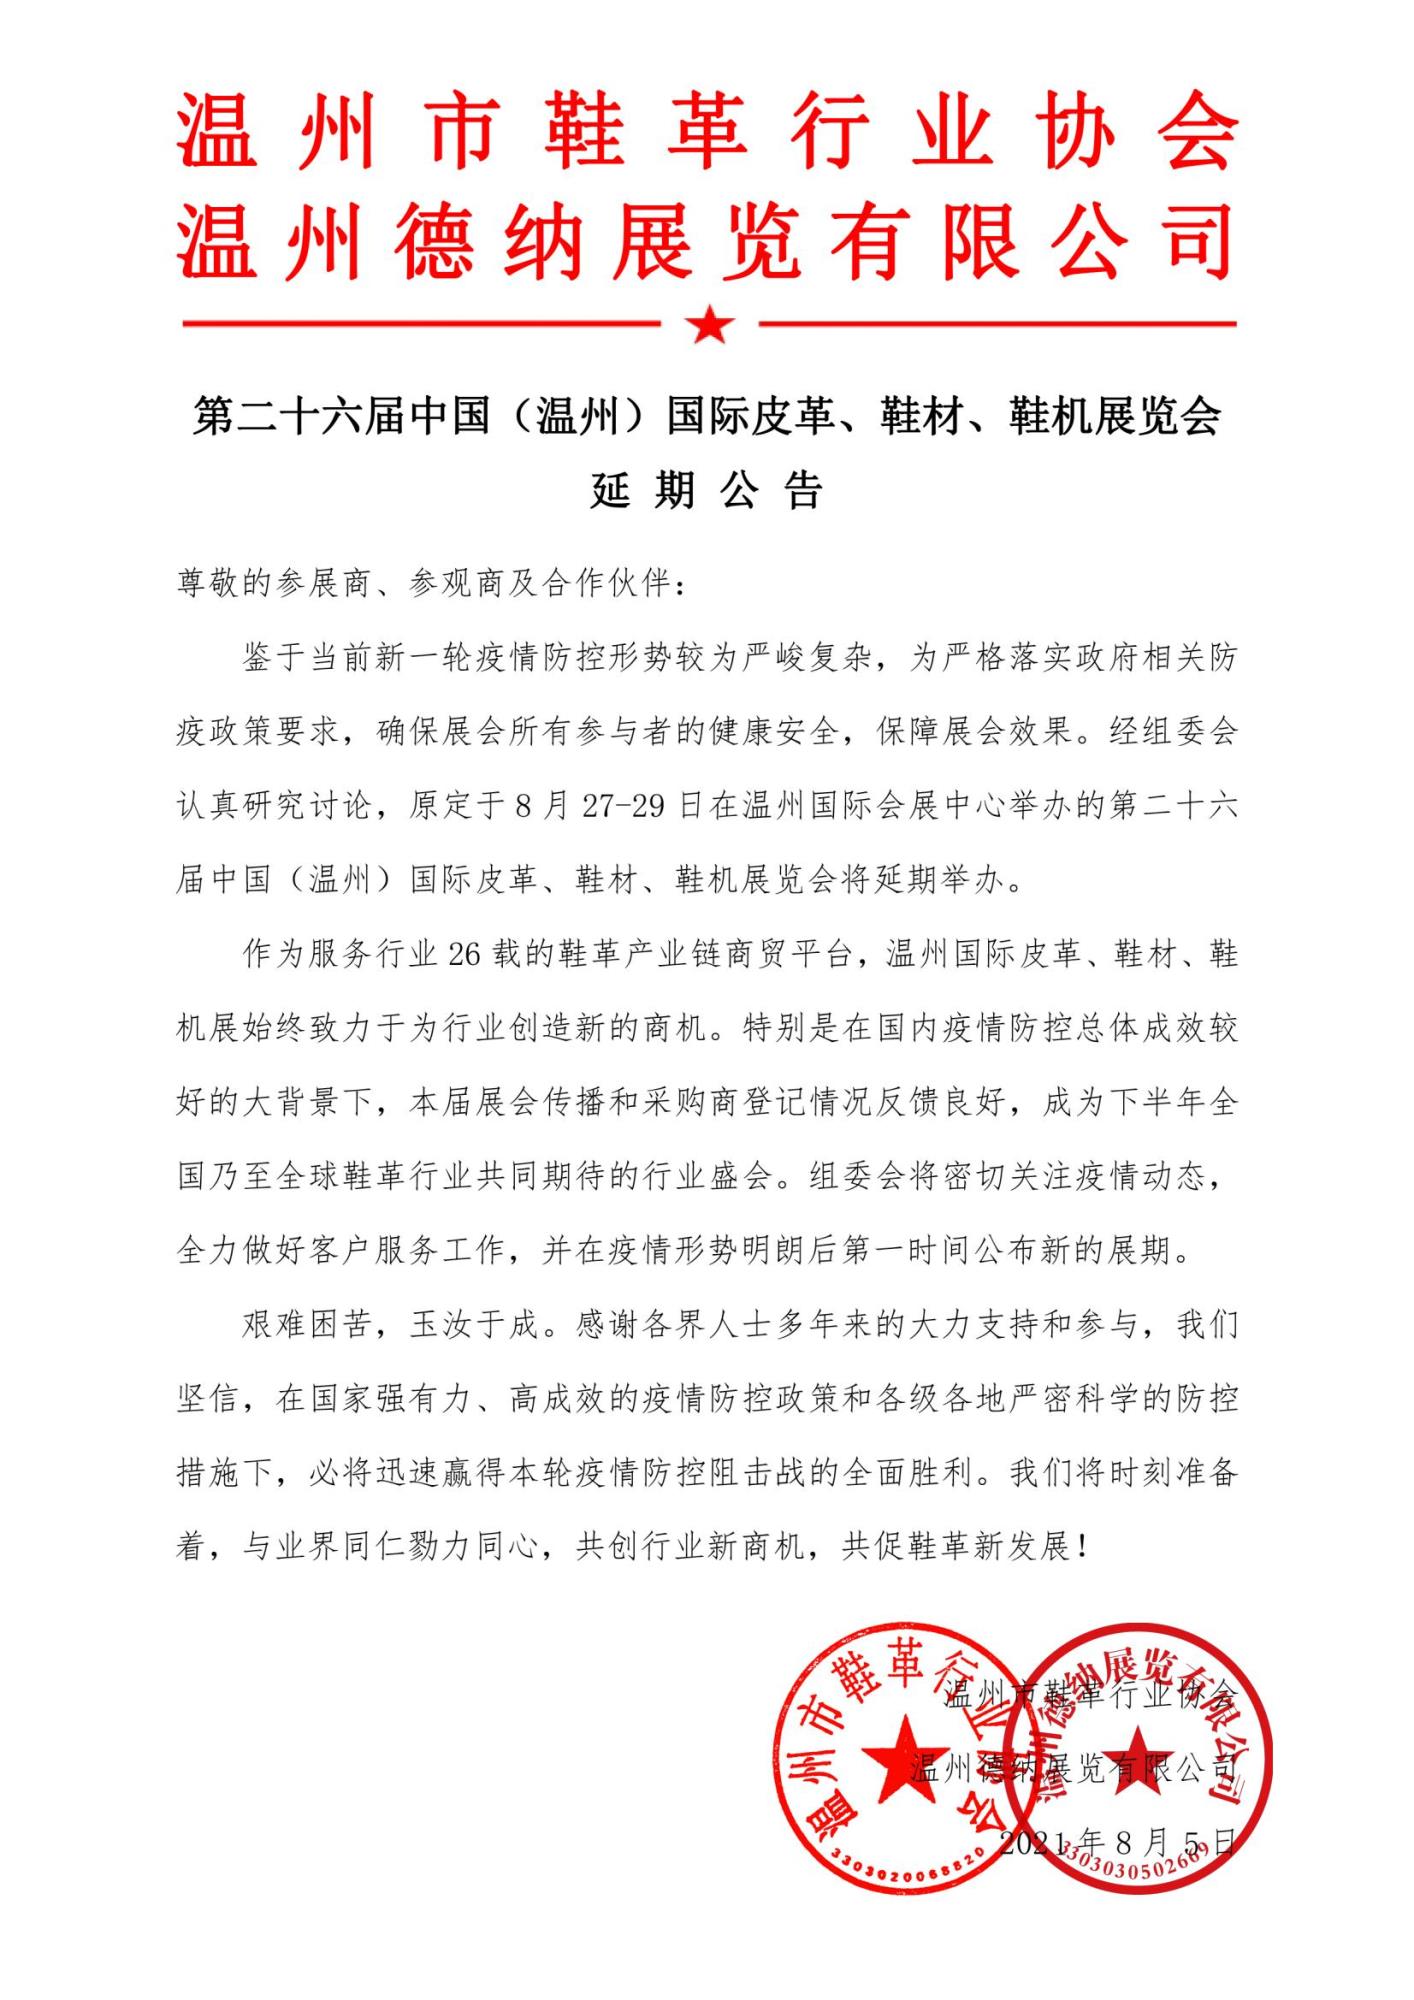 盖章件-第26届温州国际皮革展延期公告(4)_00.jpg